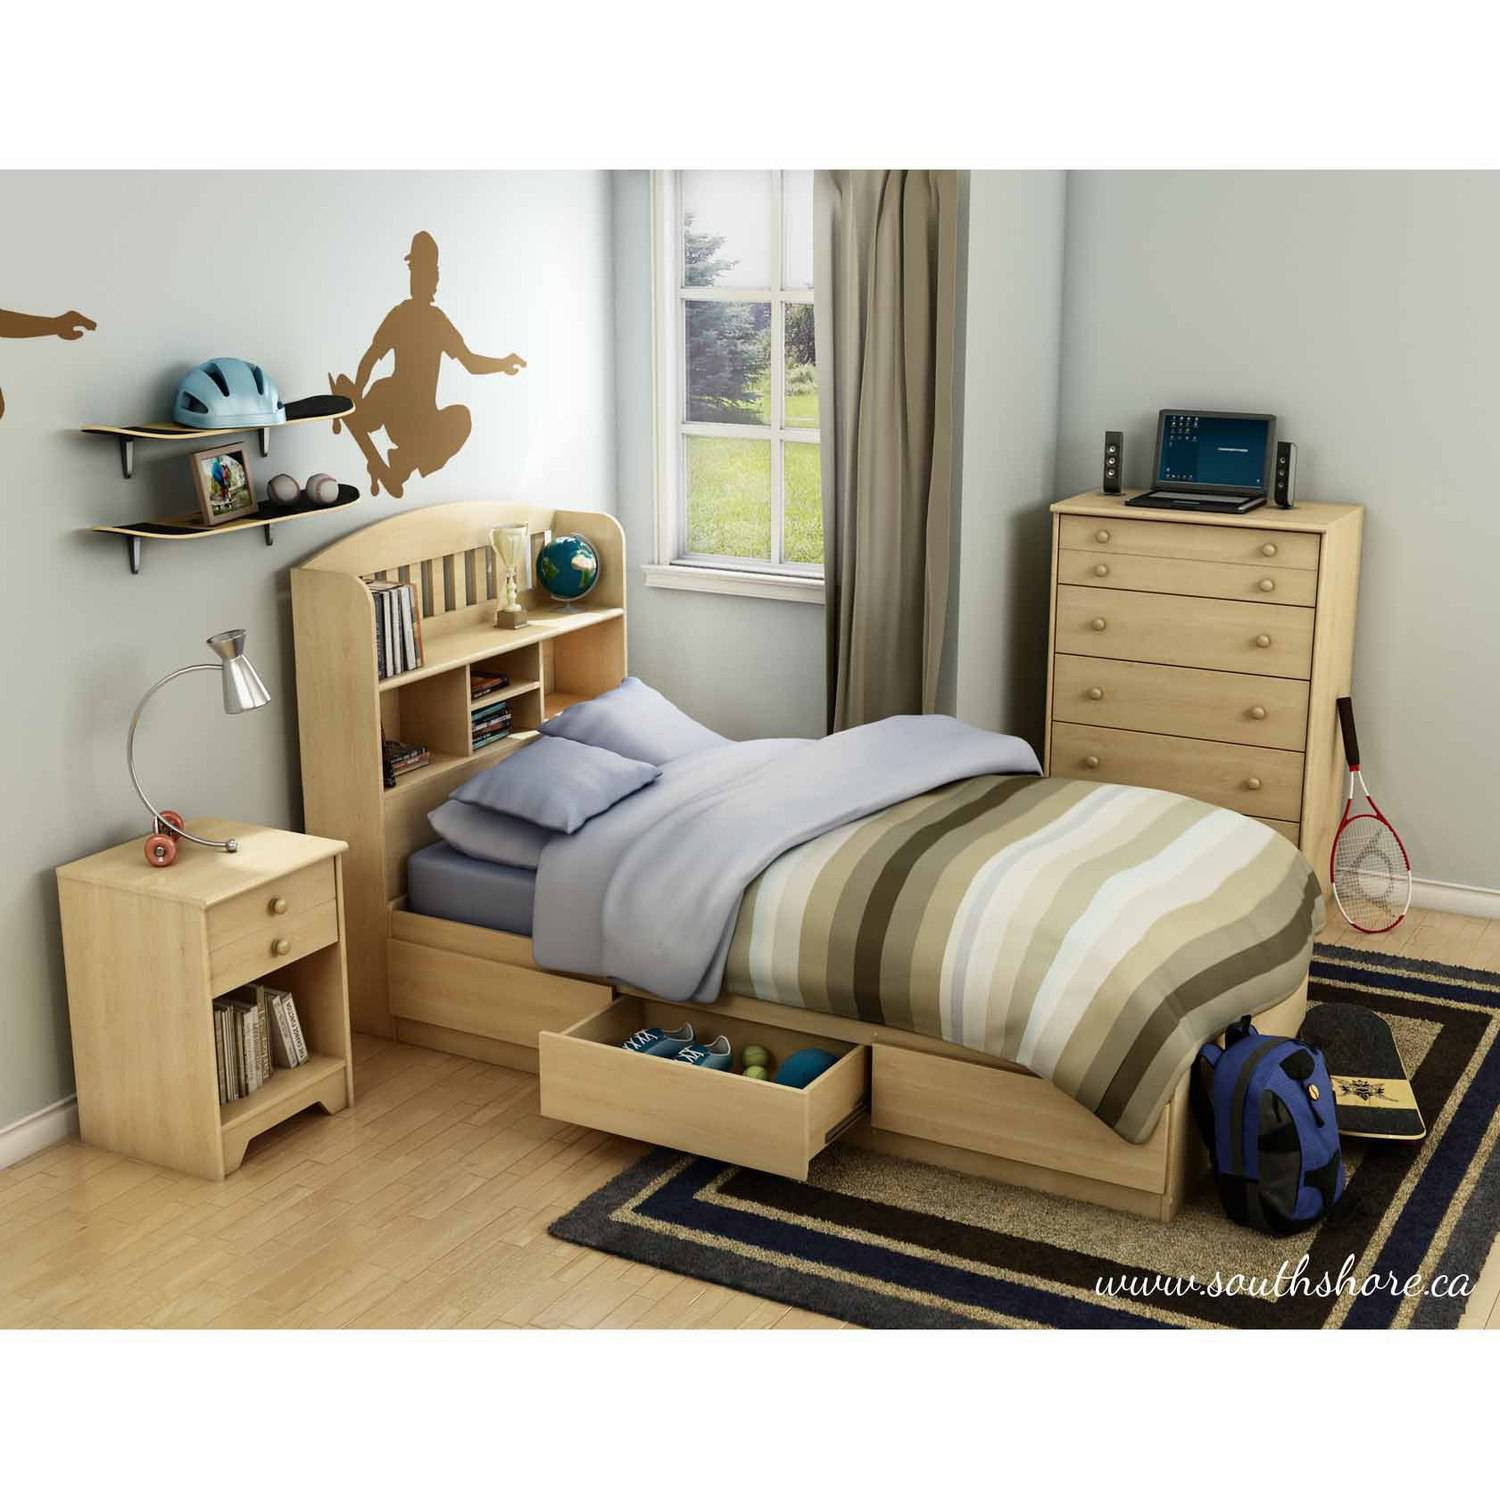 Kids Bedroom Sets Walmart
 South Shore Popular Kids Bedroom Furniture Collection